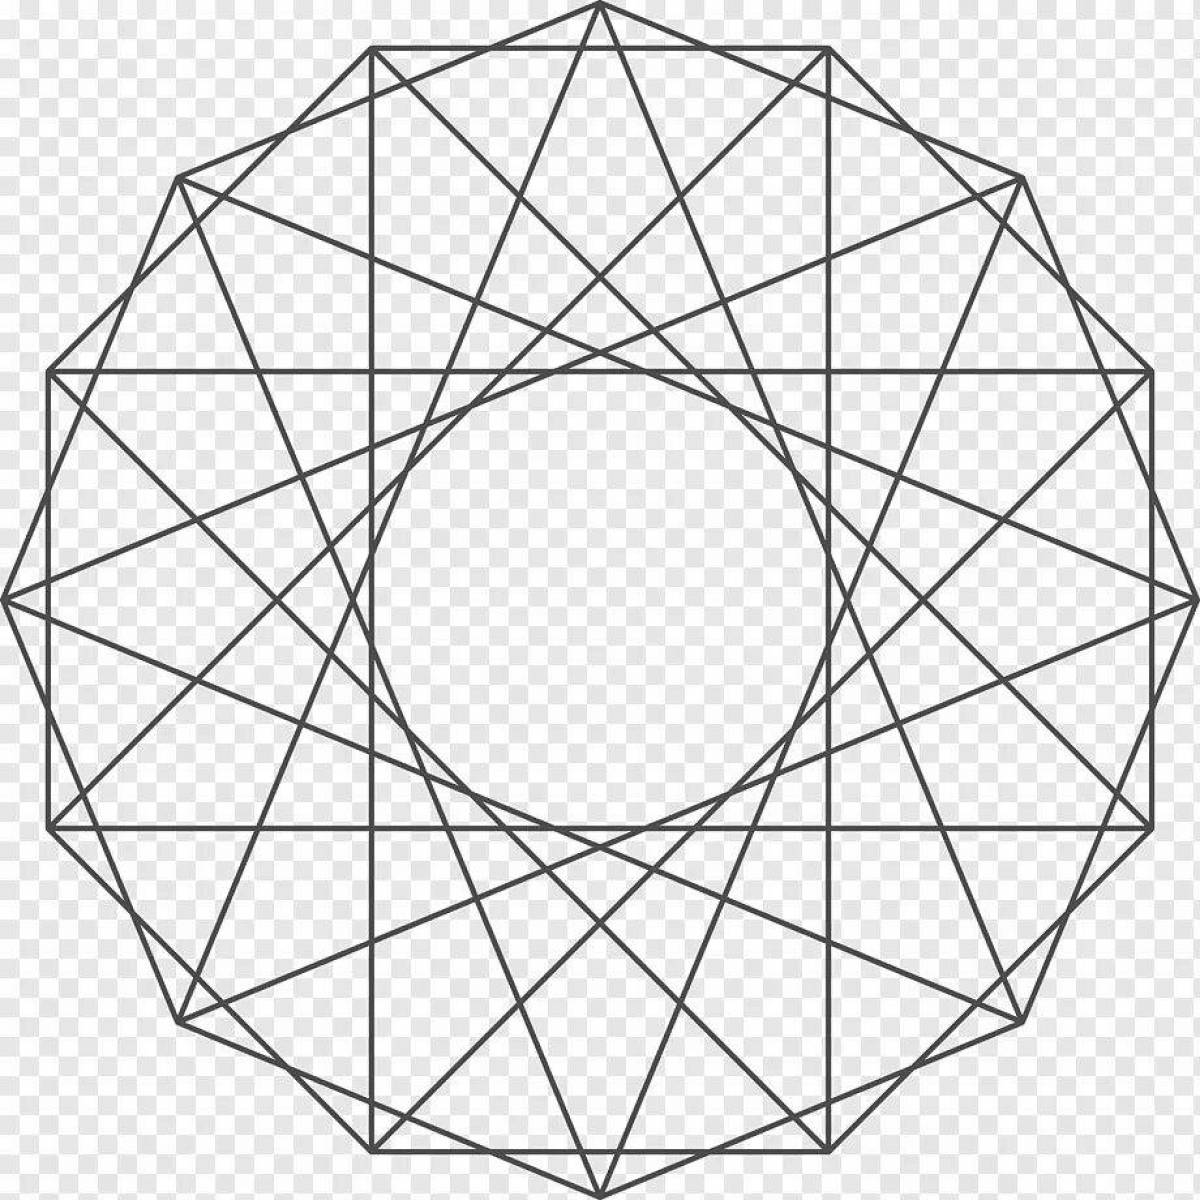 Круг из треугольников из бумаги. Правильный двадцатиугольник. Геометрические рисунки. Геометрический узор в круге. Правильный двенадцатиугольник.